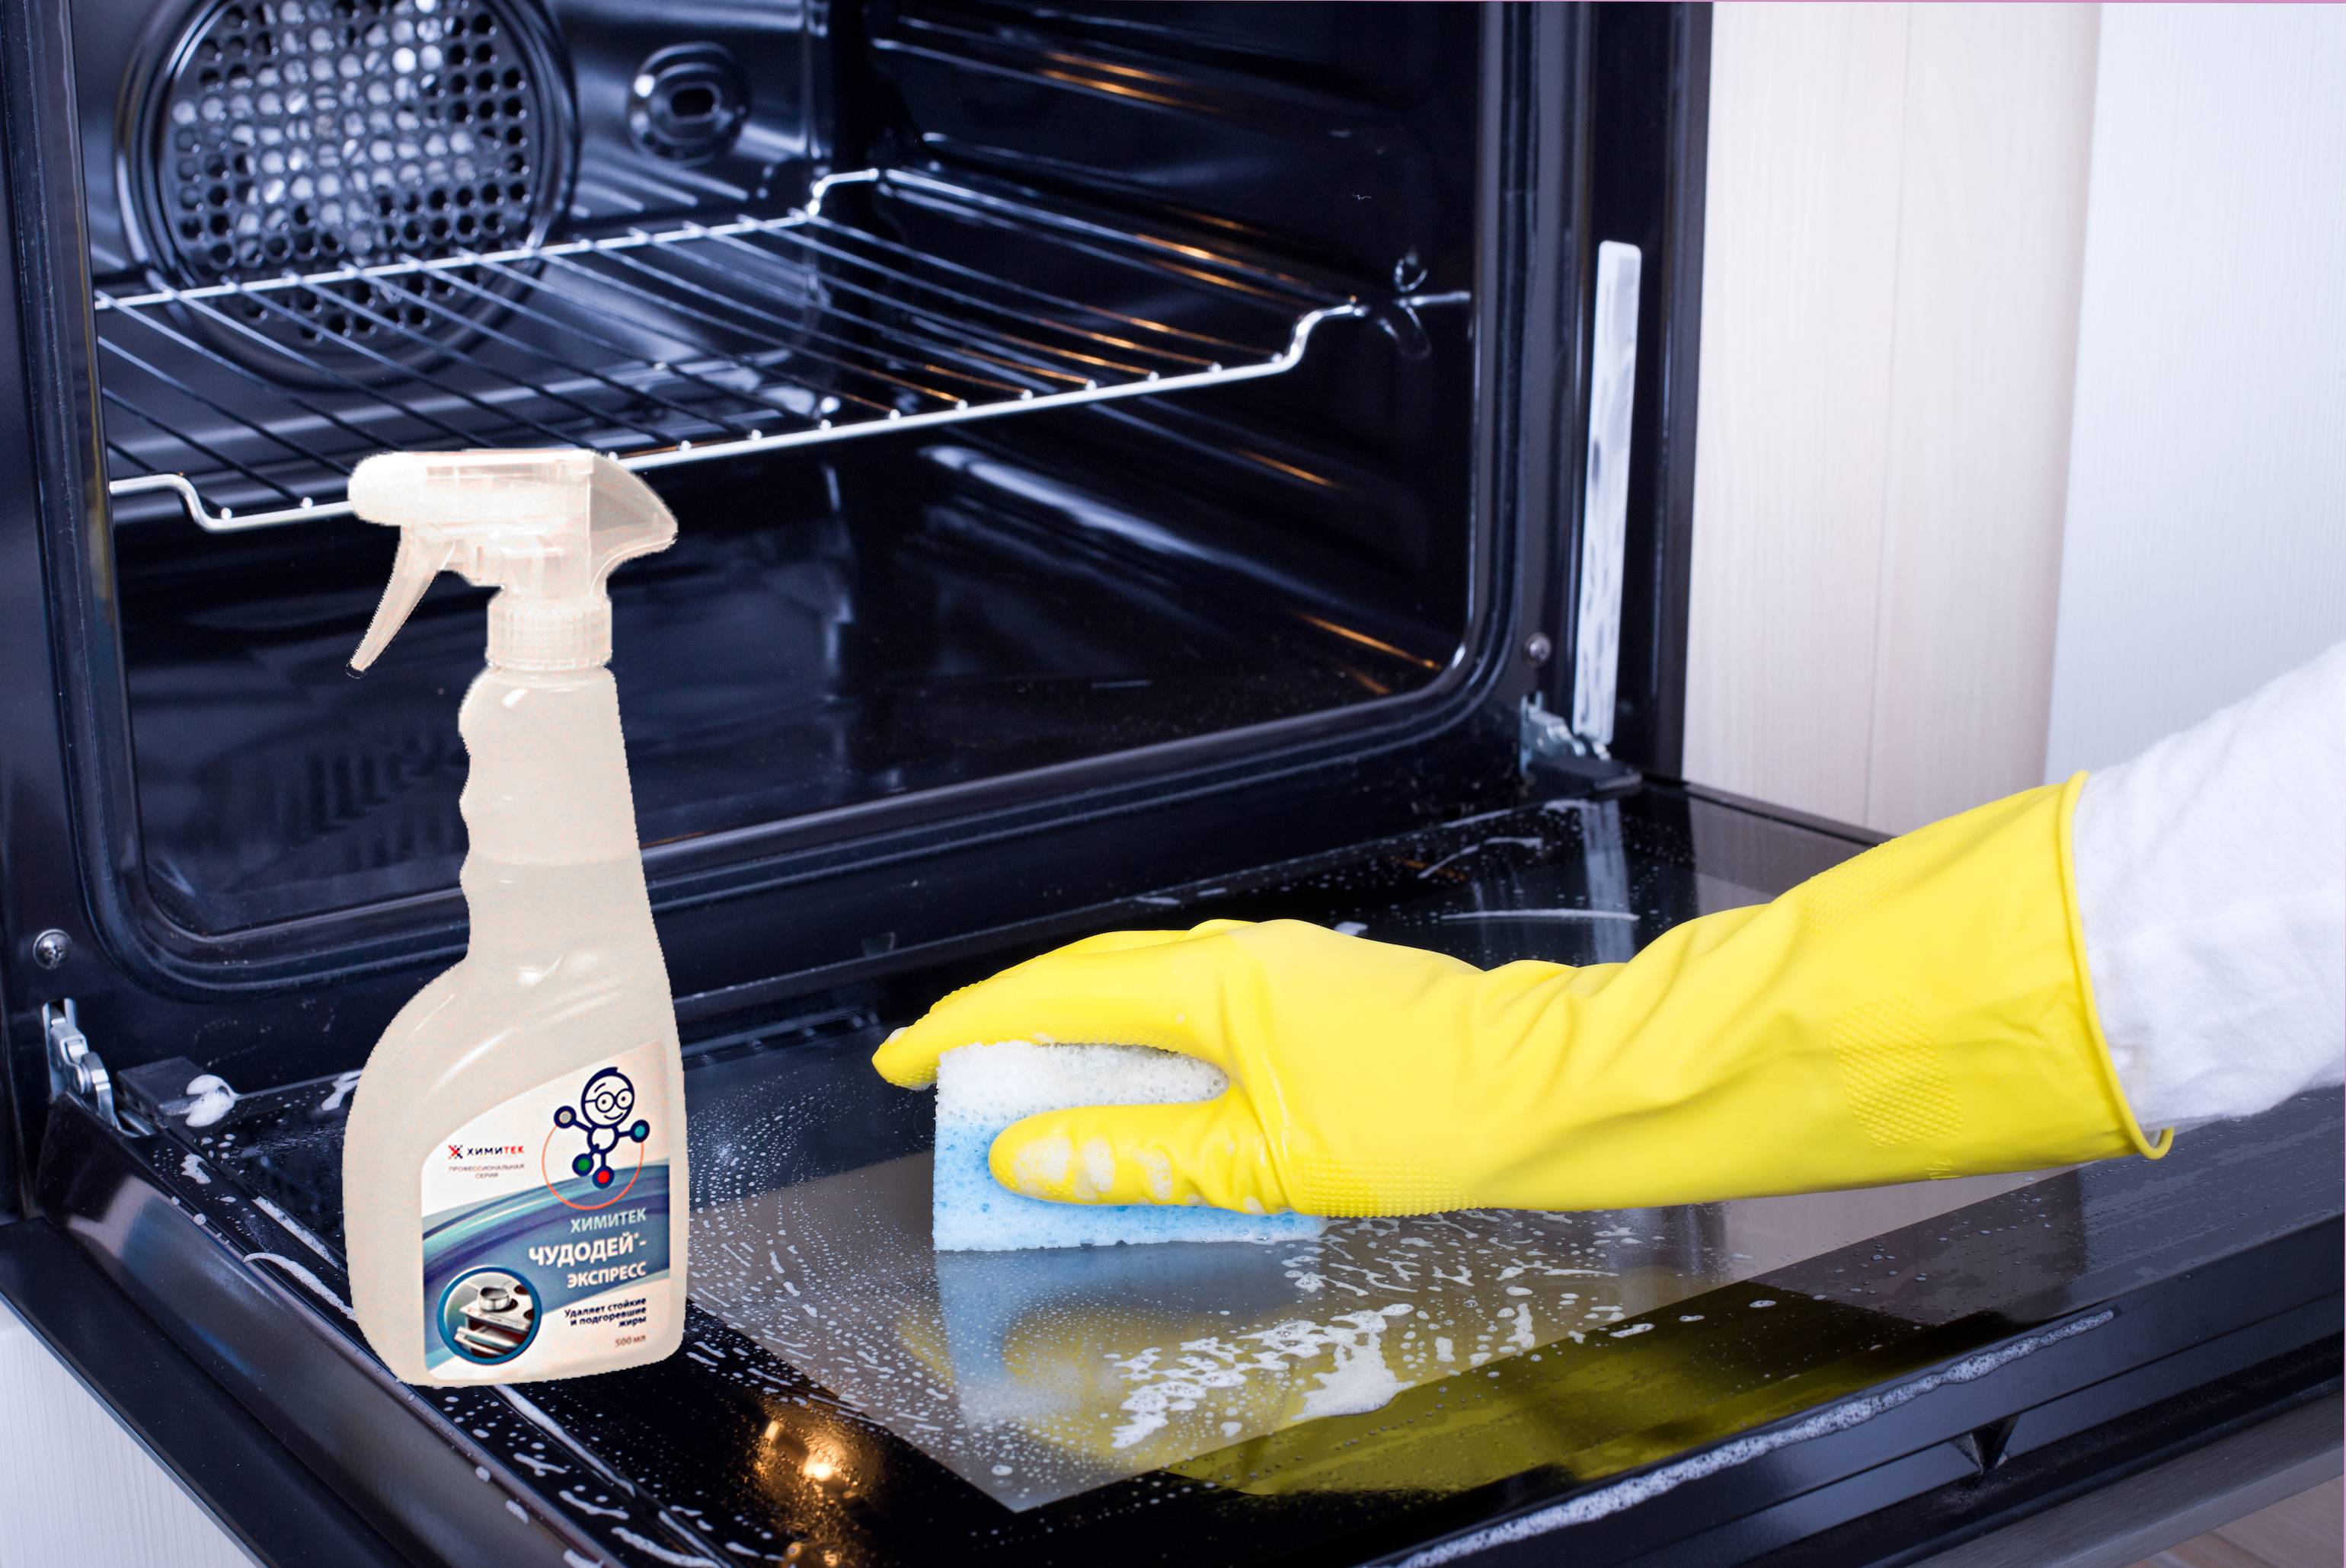 Как очистить духовку от жира и нагара, средства отмывать духовку в домашних условиях, чистка старой плиты и духового шкафа